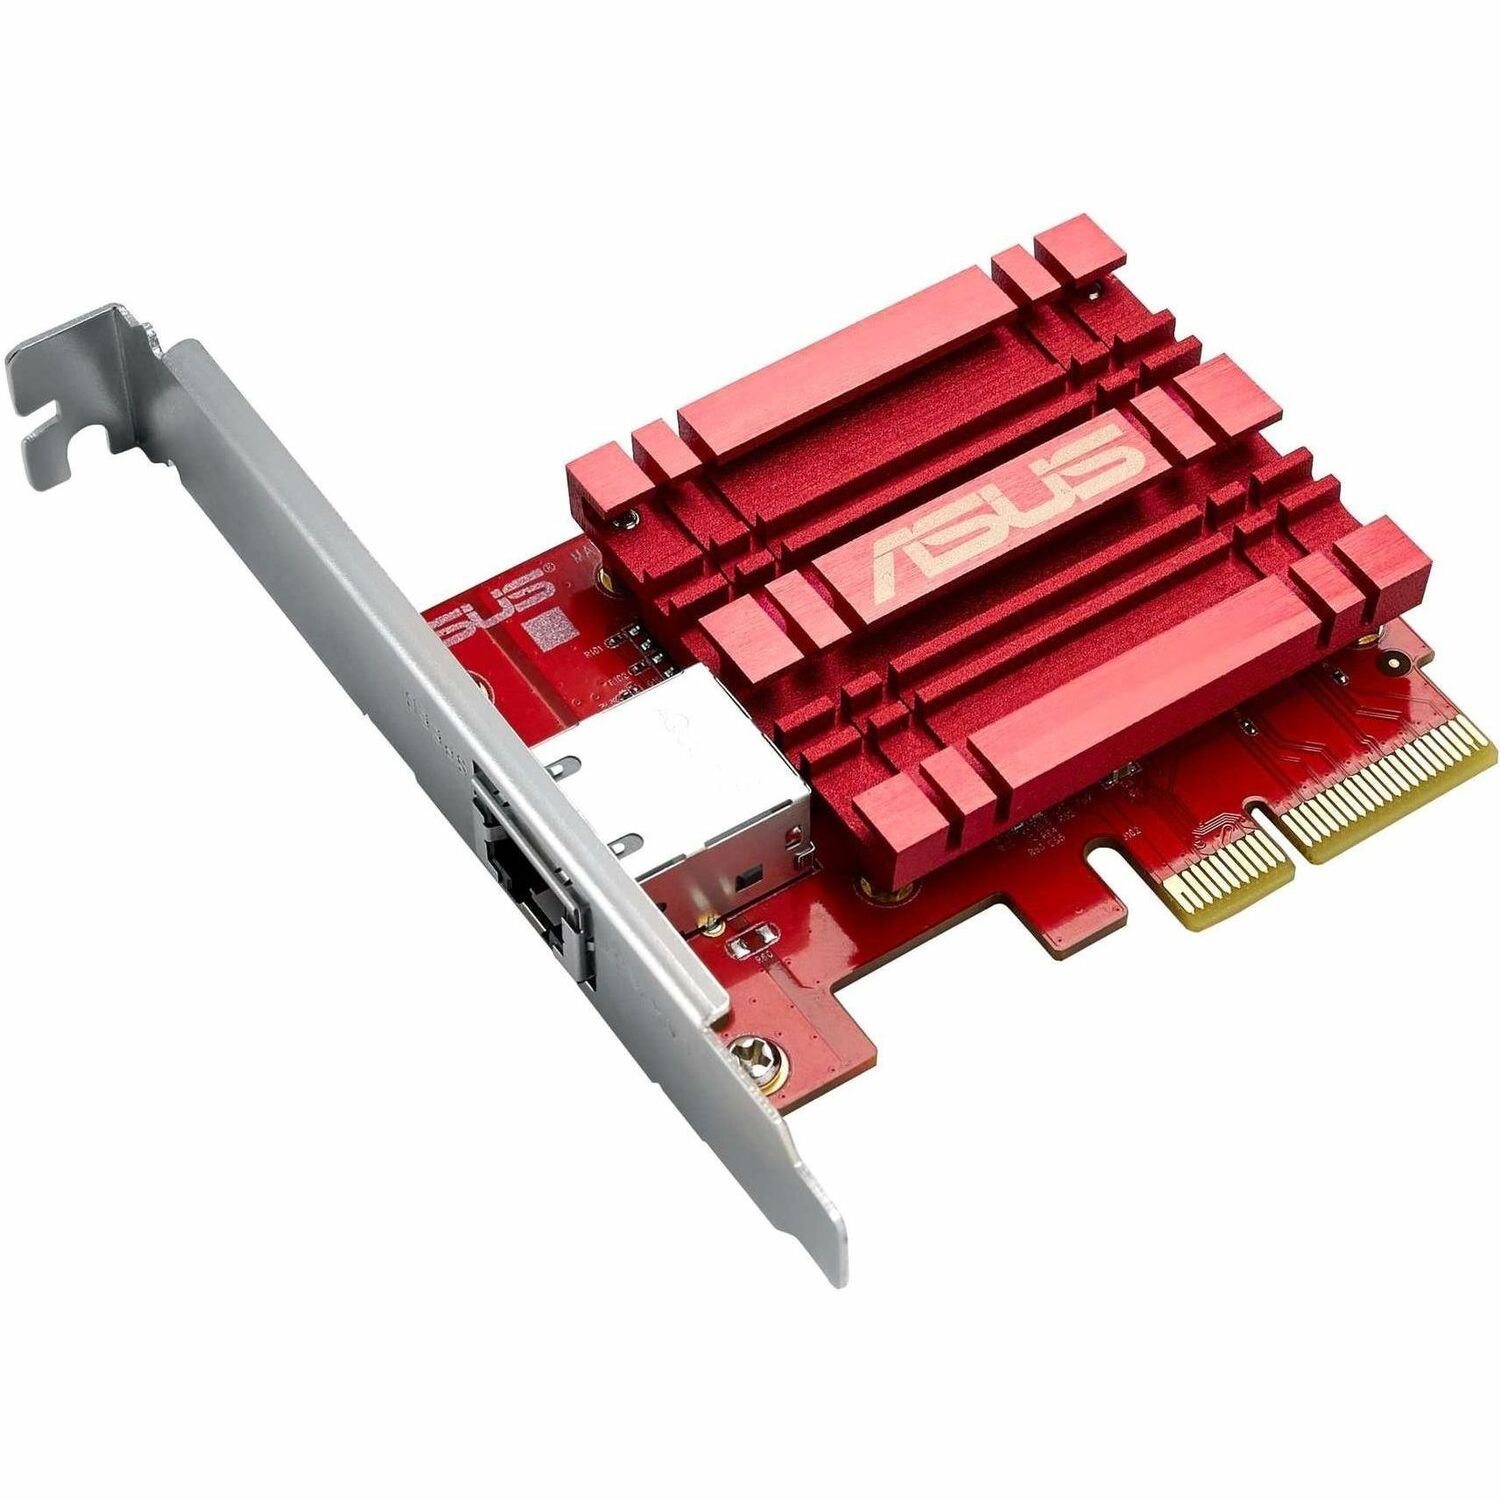 Asus XG-C100C V2 10Gigabit Ethernet Card for Computer/Server/Workstation - 10GBase-T - Plug-in Card